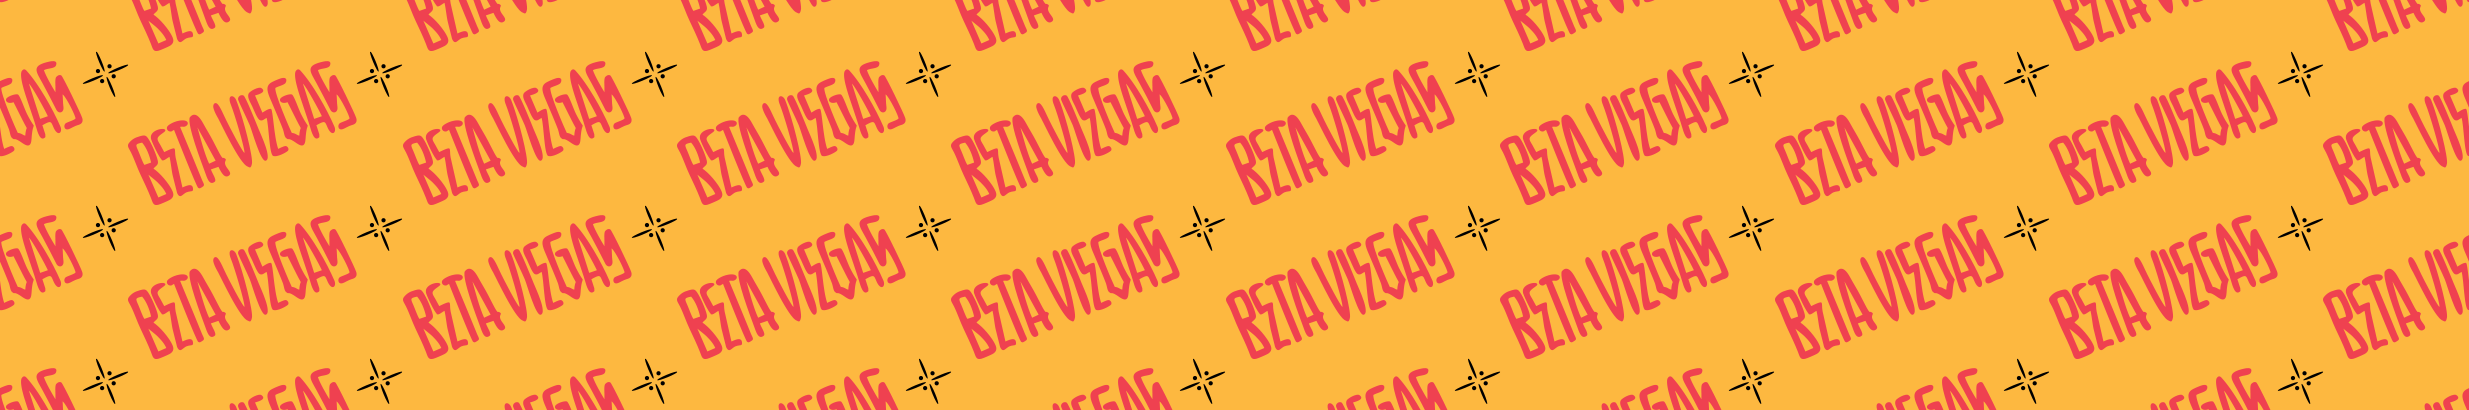 Bannière de profil de Beta Viegas